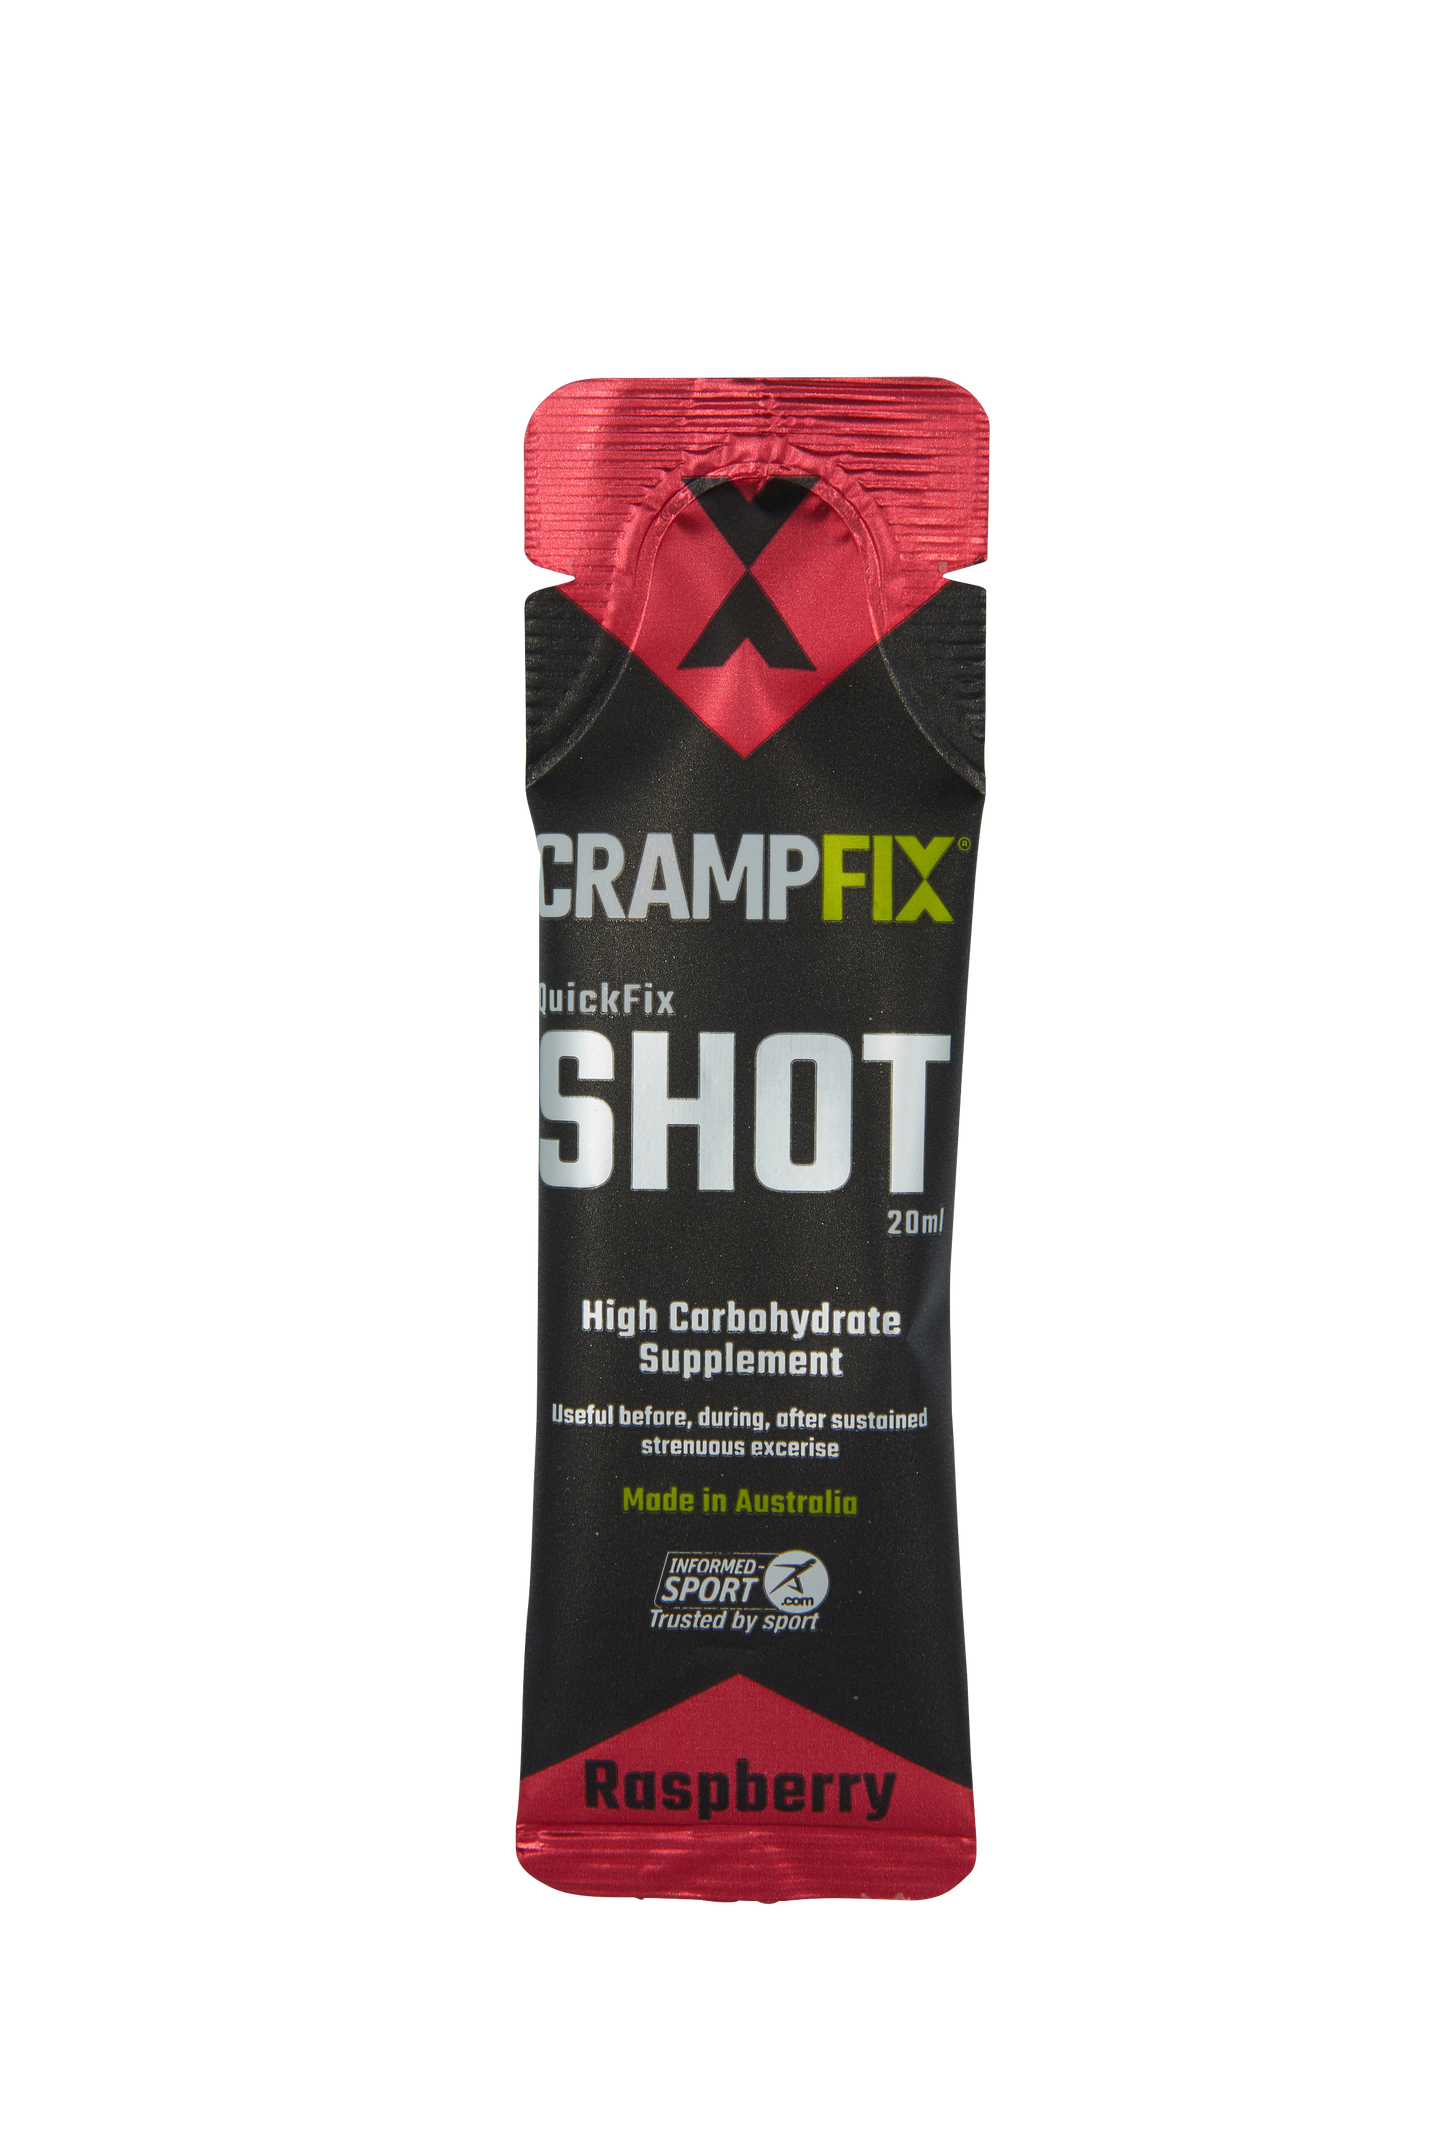 CRAMPFIX - QuickFix Shots - 6 x 20ml Single Serve